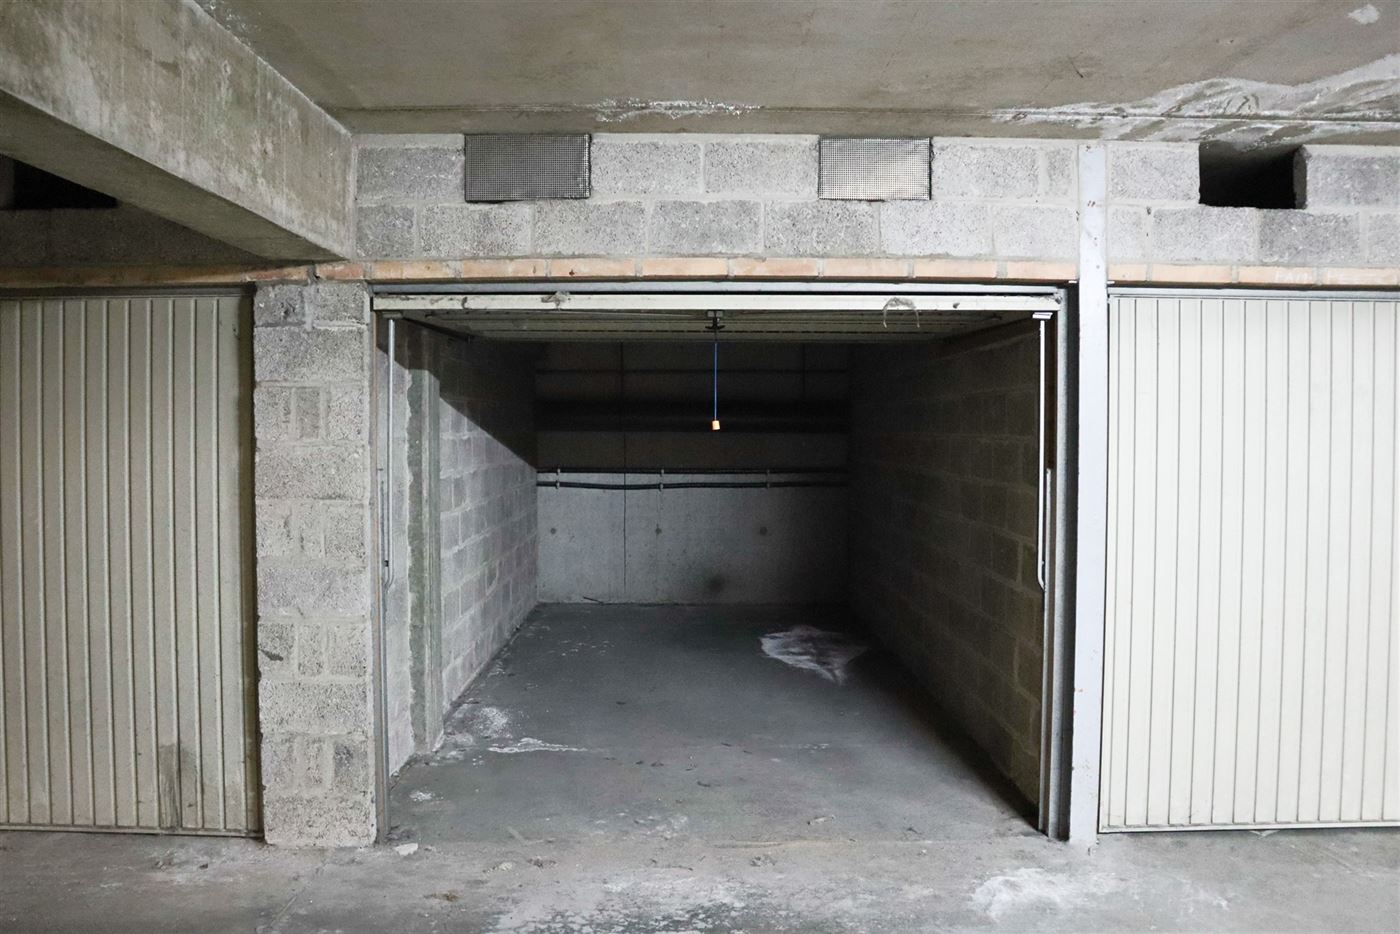 Res. Zonneschijn - Garage 30 - Afgesloten garagebox op niveau -1 - Toegang via de Franslaan - Afmetingen: 2,66 x 5,30 m - Inrijhoogte van 1,75 m
...